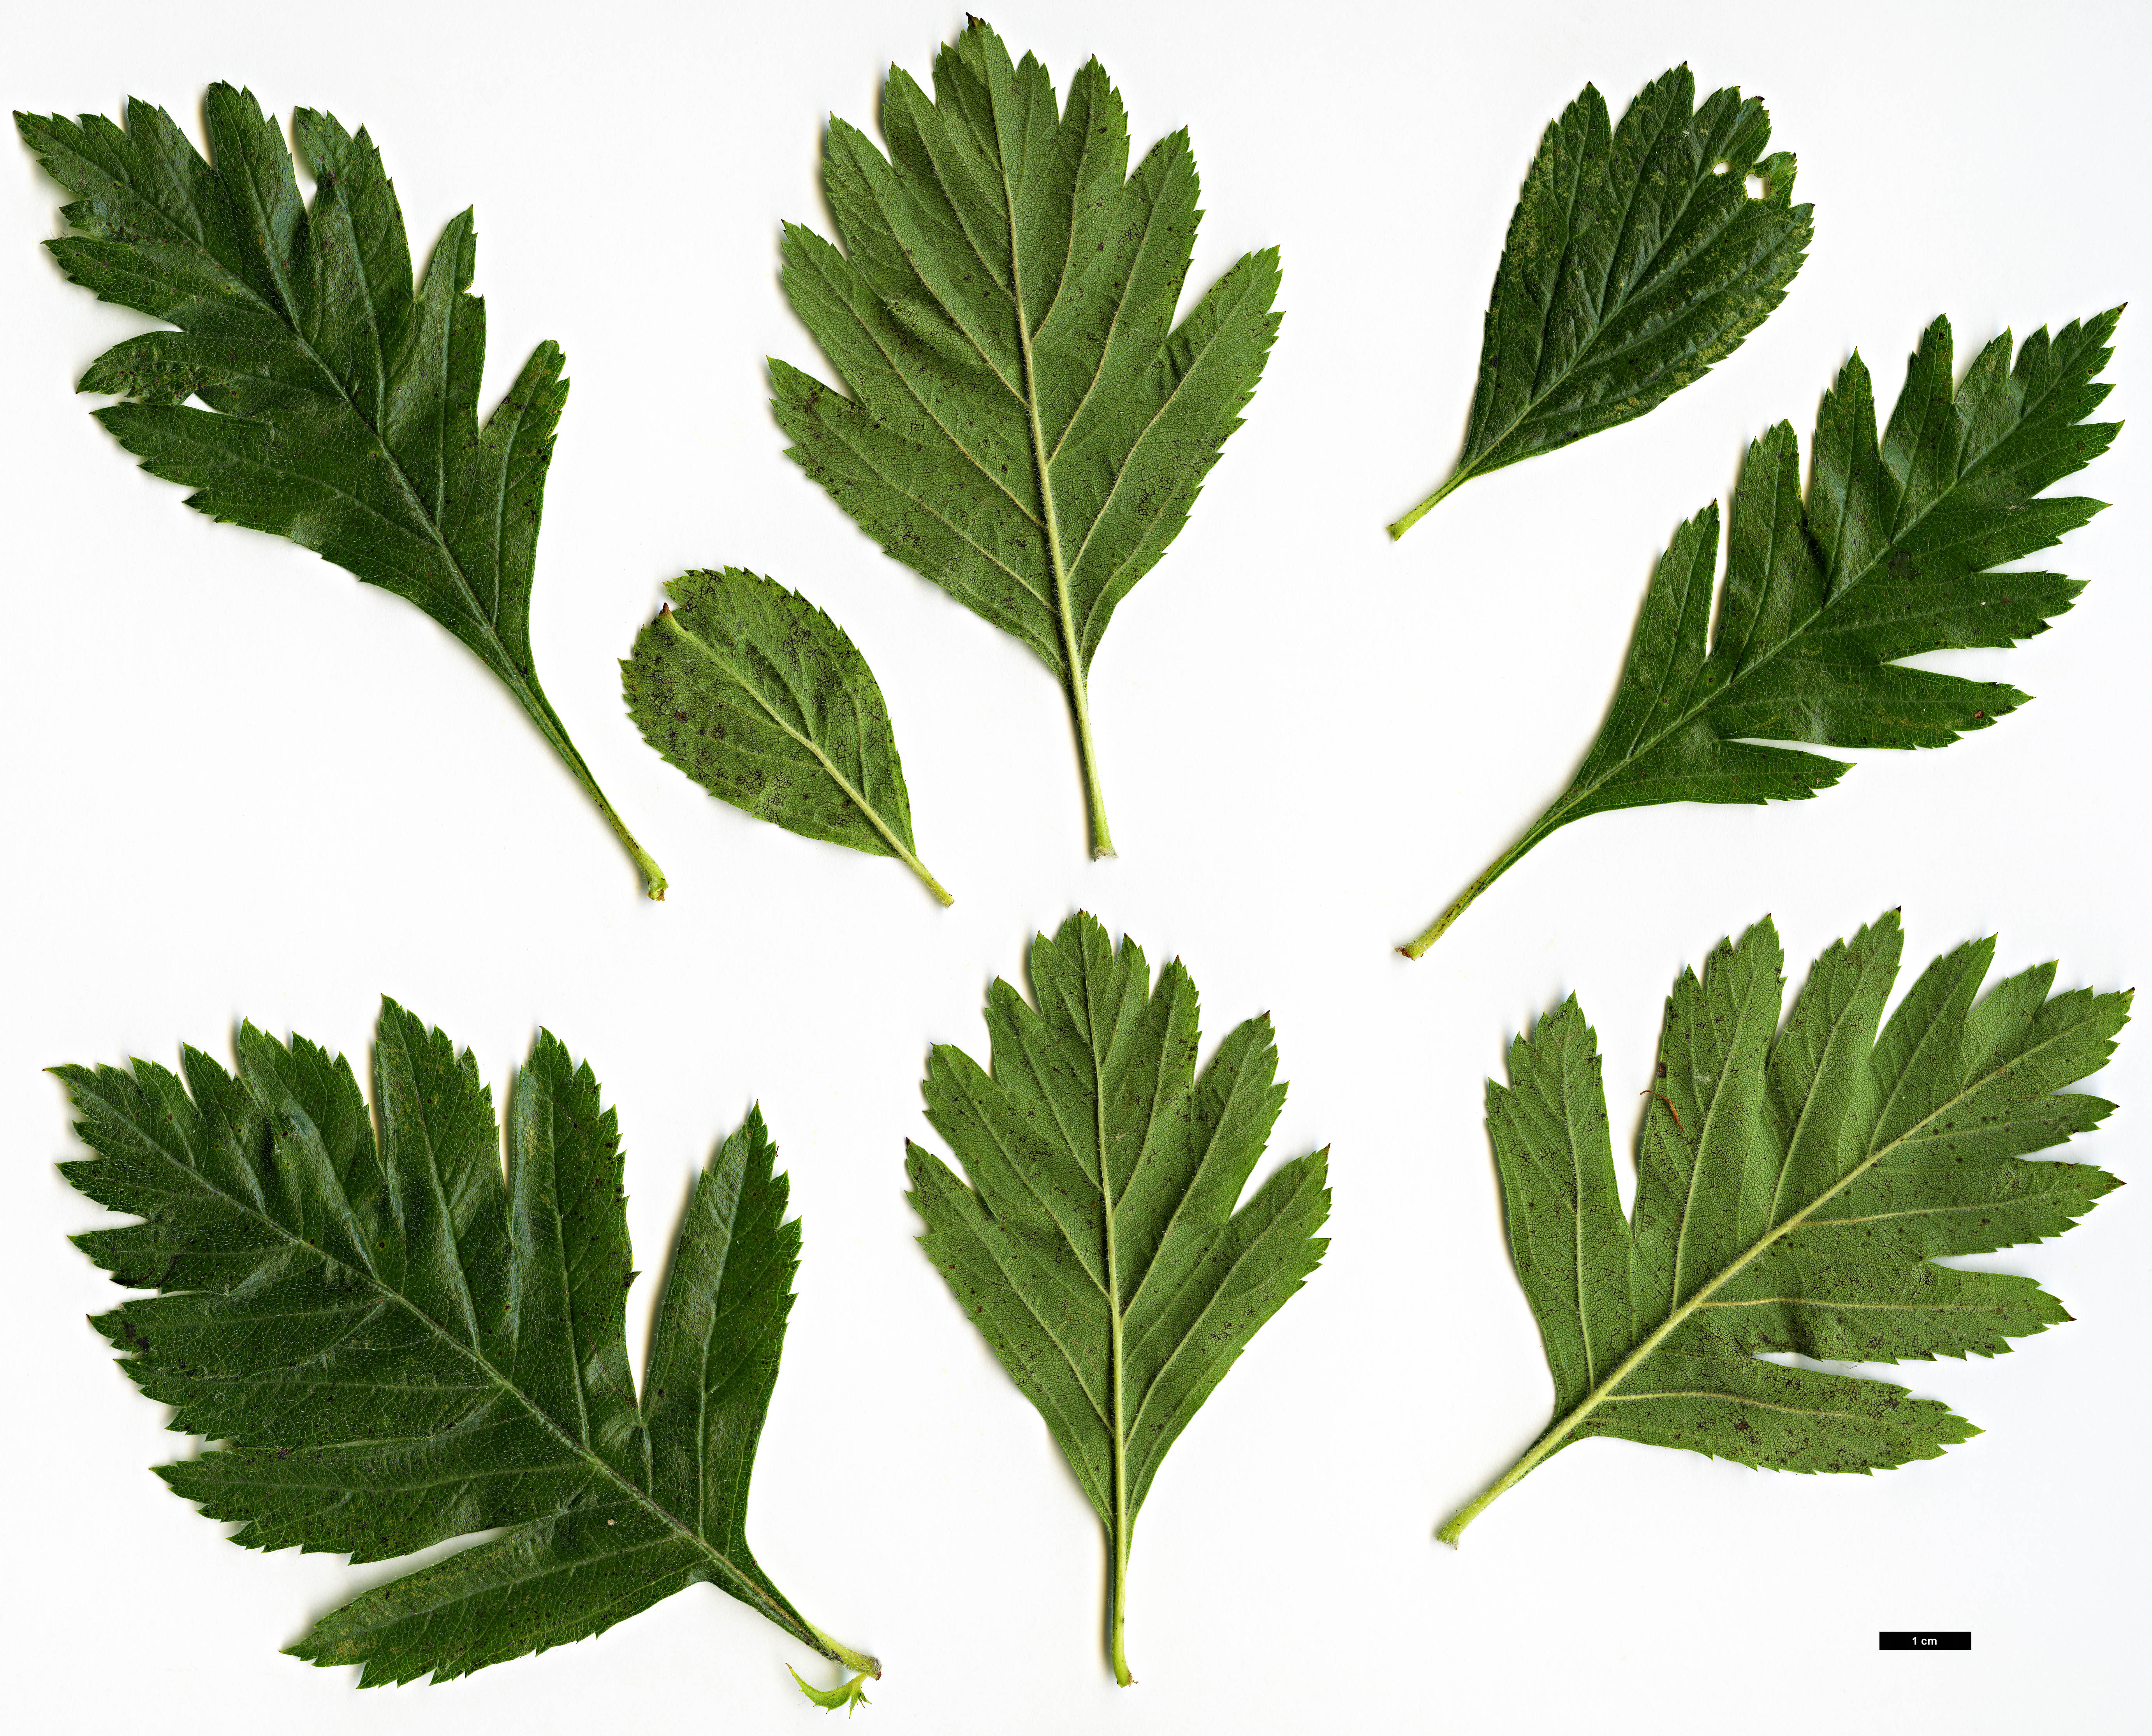 High resolution image: Family: Rosaceae - Genus: Crataegus - Taxon: ×dippelliana (C.tanacetifolia ×)